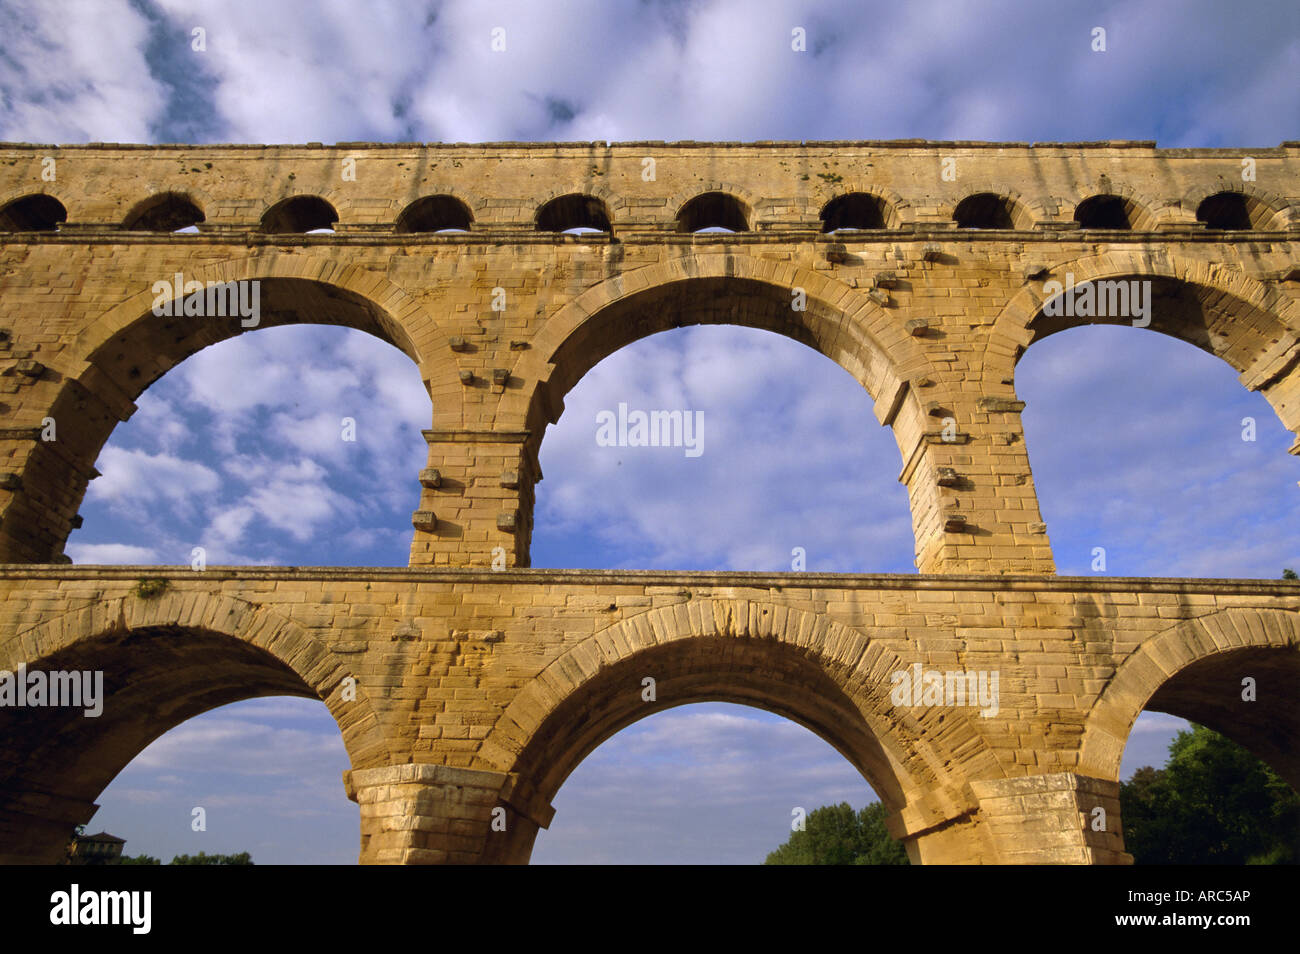 Aqueduc romain, le Pont du Gard, Site du patrimoine mondial de l'UNESCO, près d'Avignon, Provence, France, Europe Banque D'Images